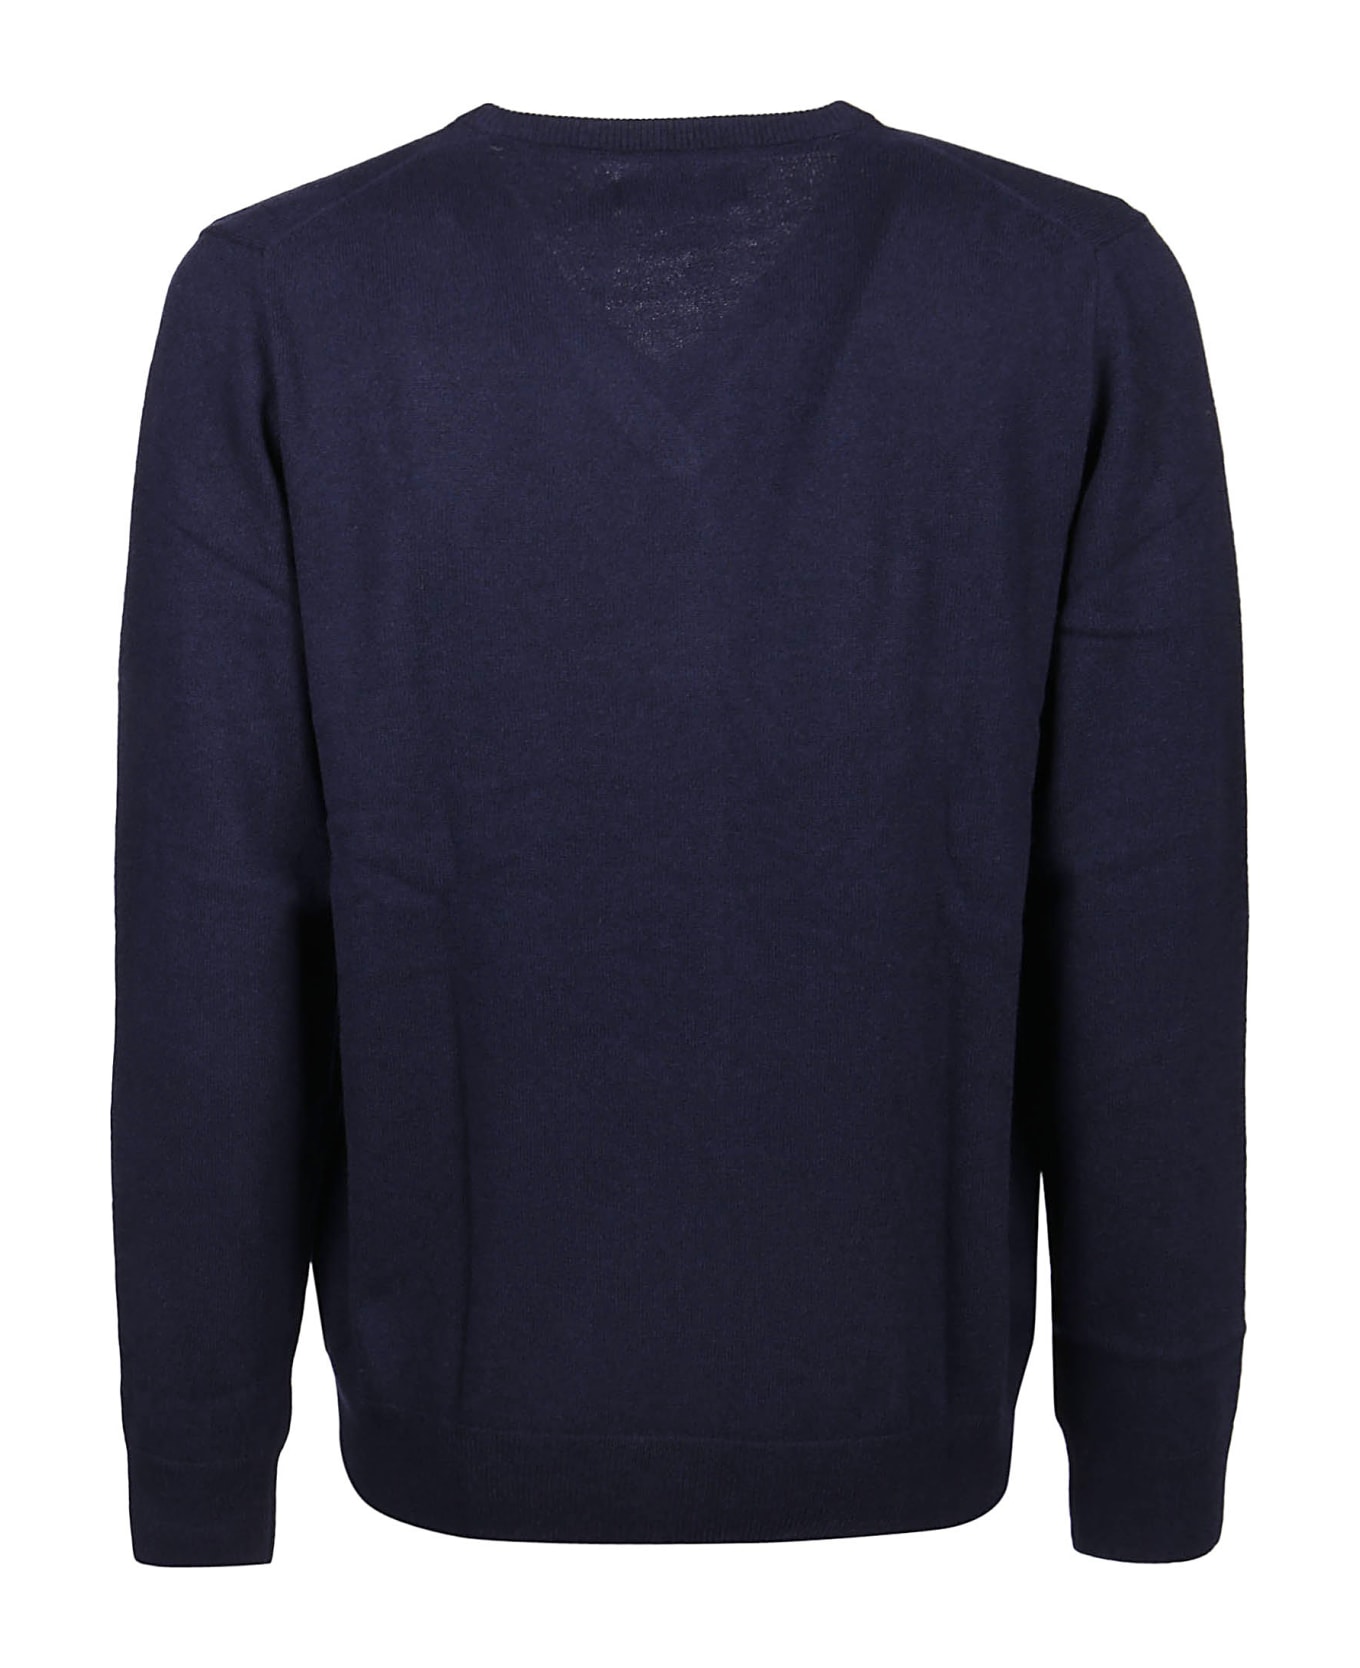 Ralph Lauren Long Sleeve Sweater - Hunter Navy